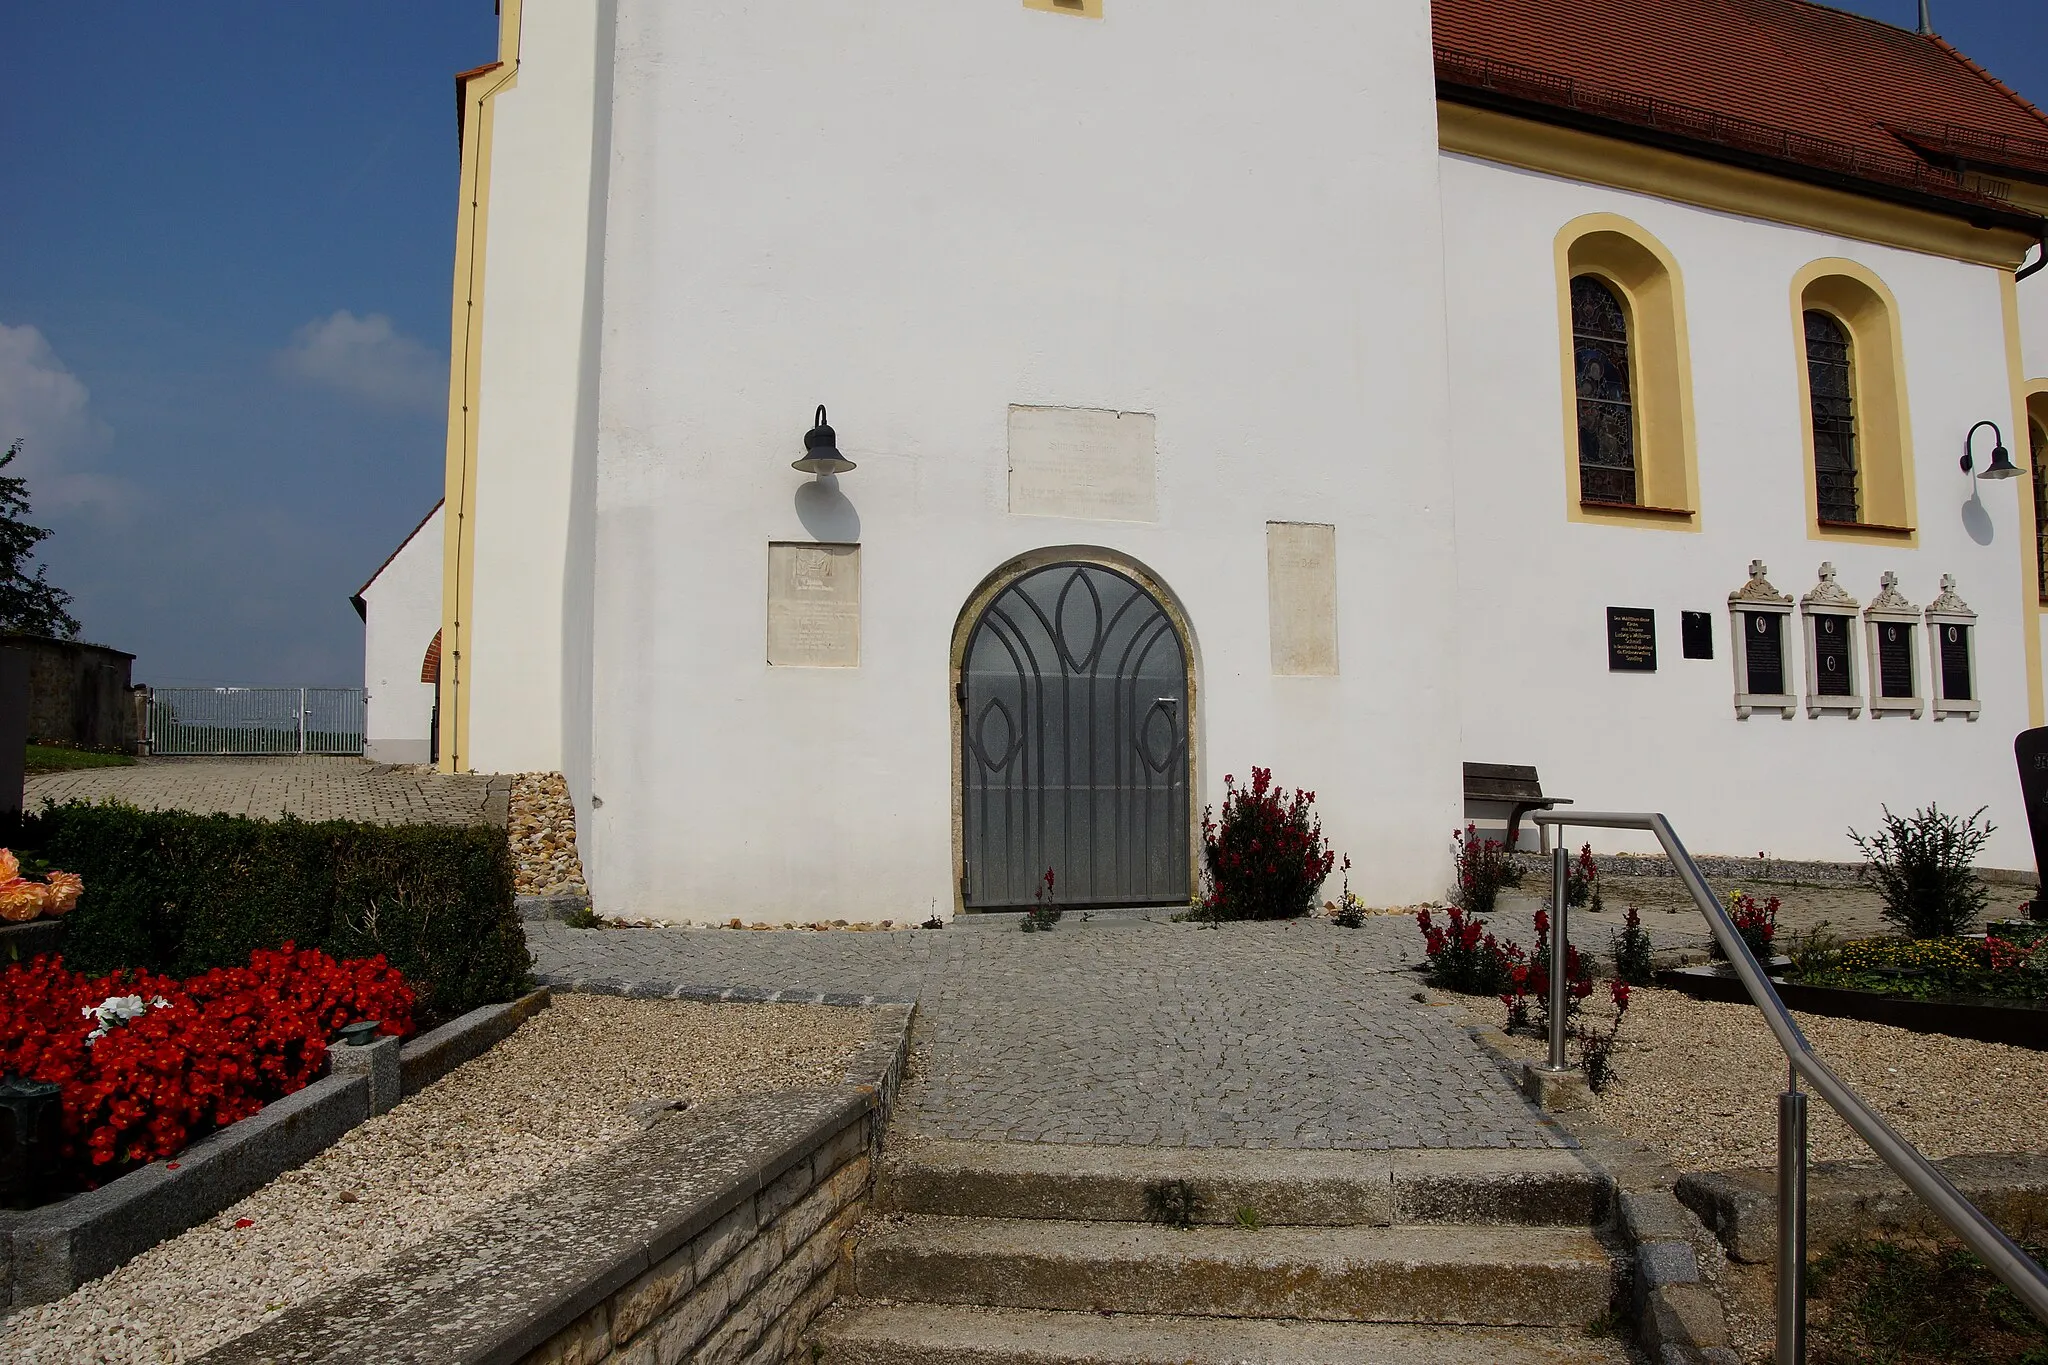 Photo showing: Die katholische Filialkirche in Untersanding bei Regensburg